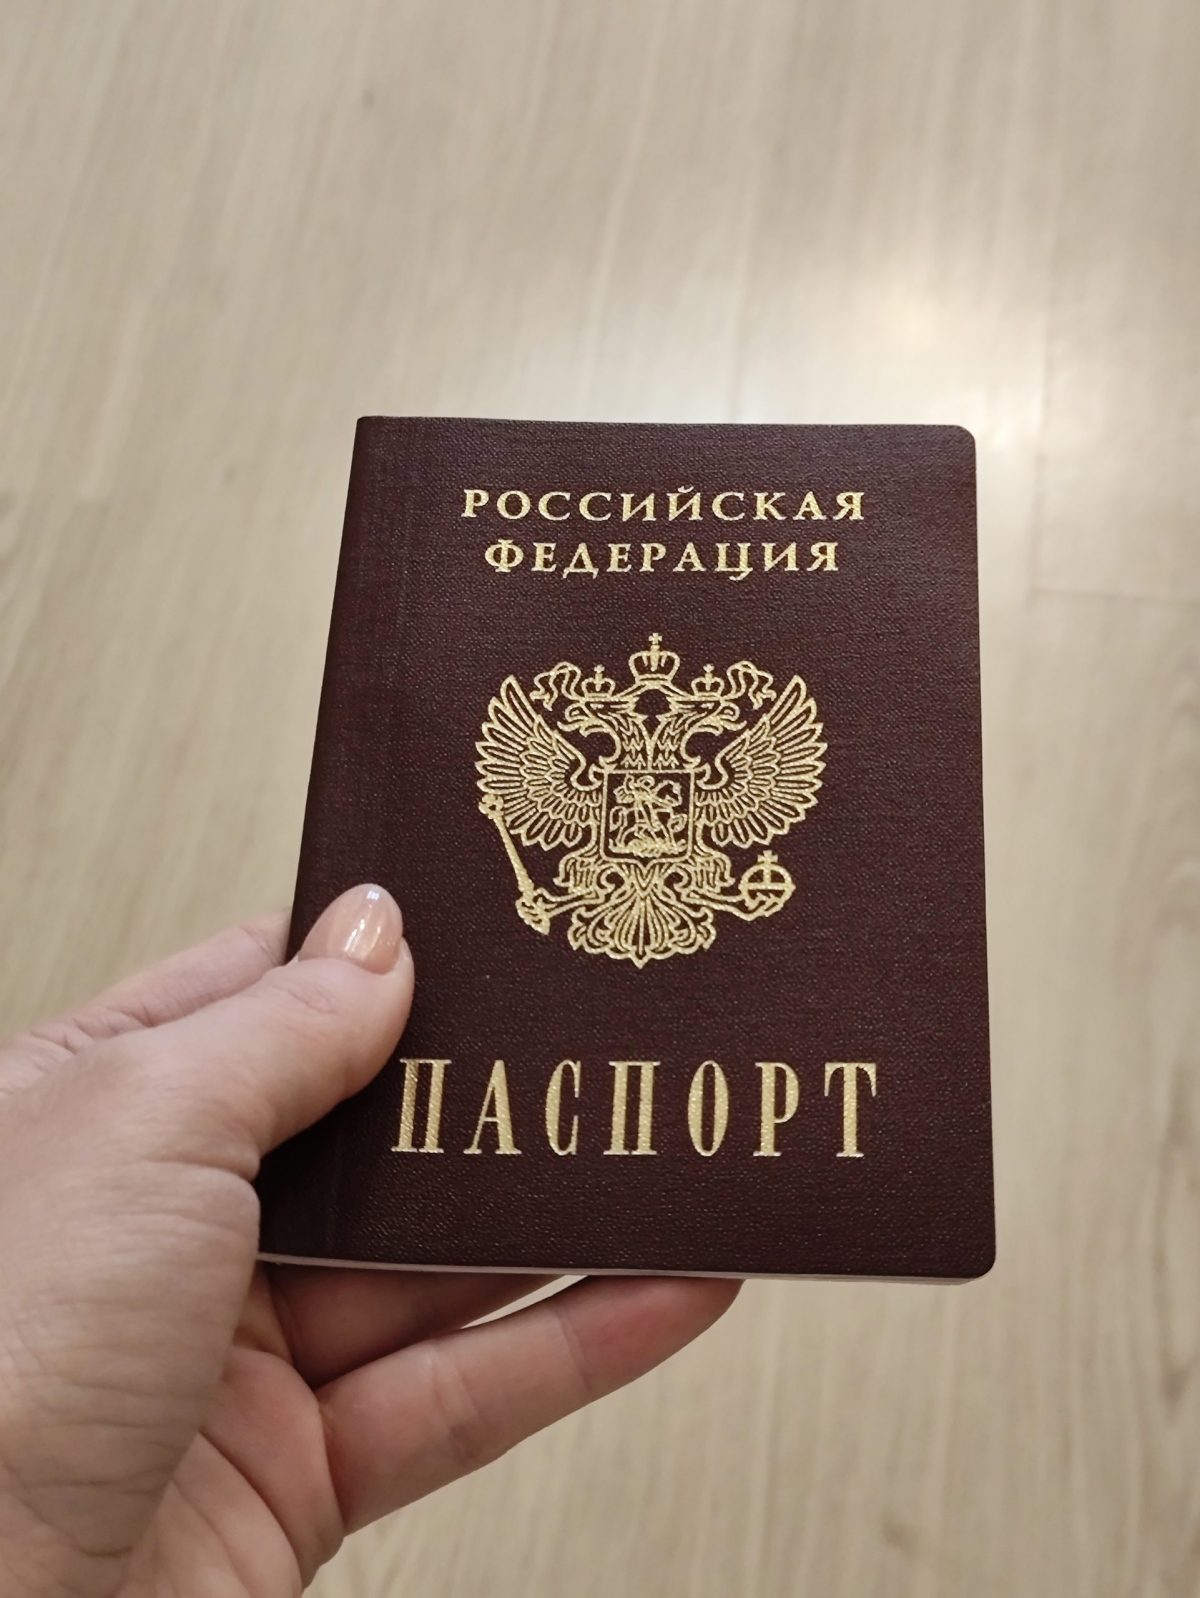 Самарский певец Шарлот извинился за то, что сжег российский паспорт